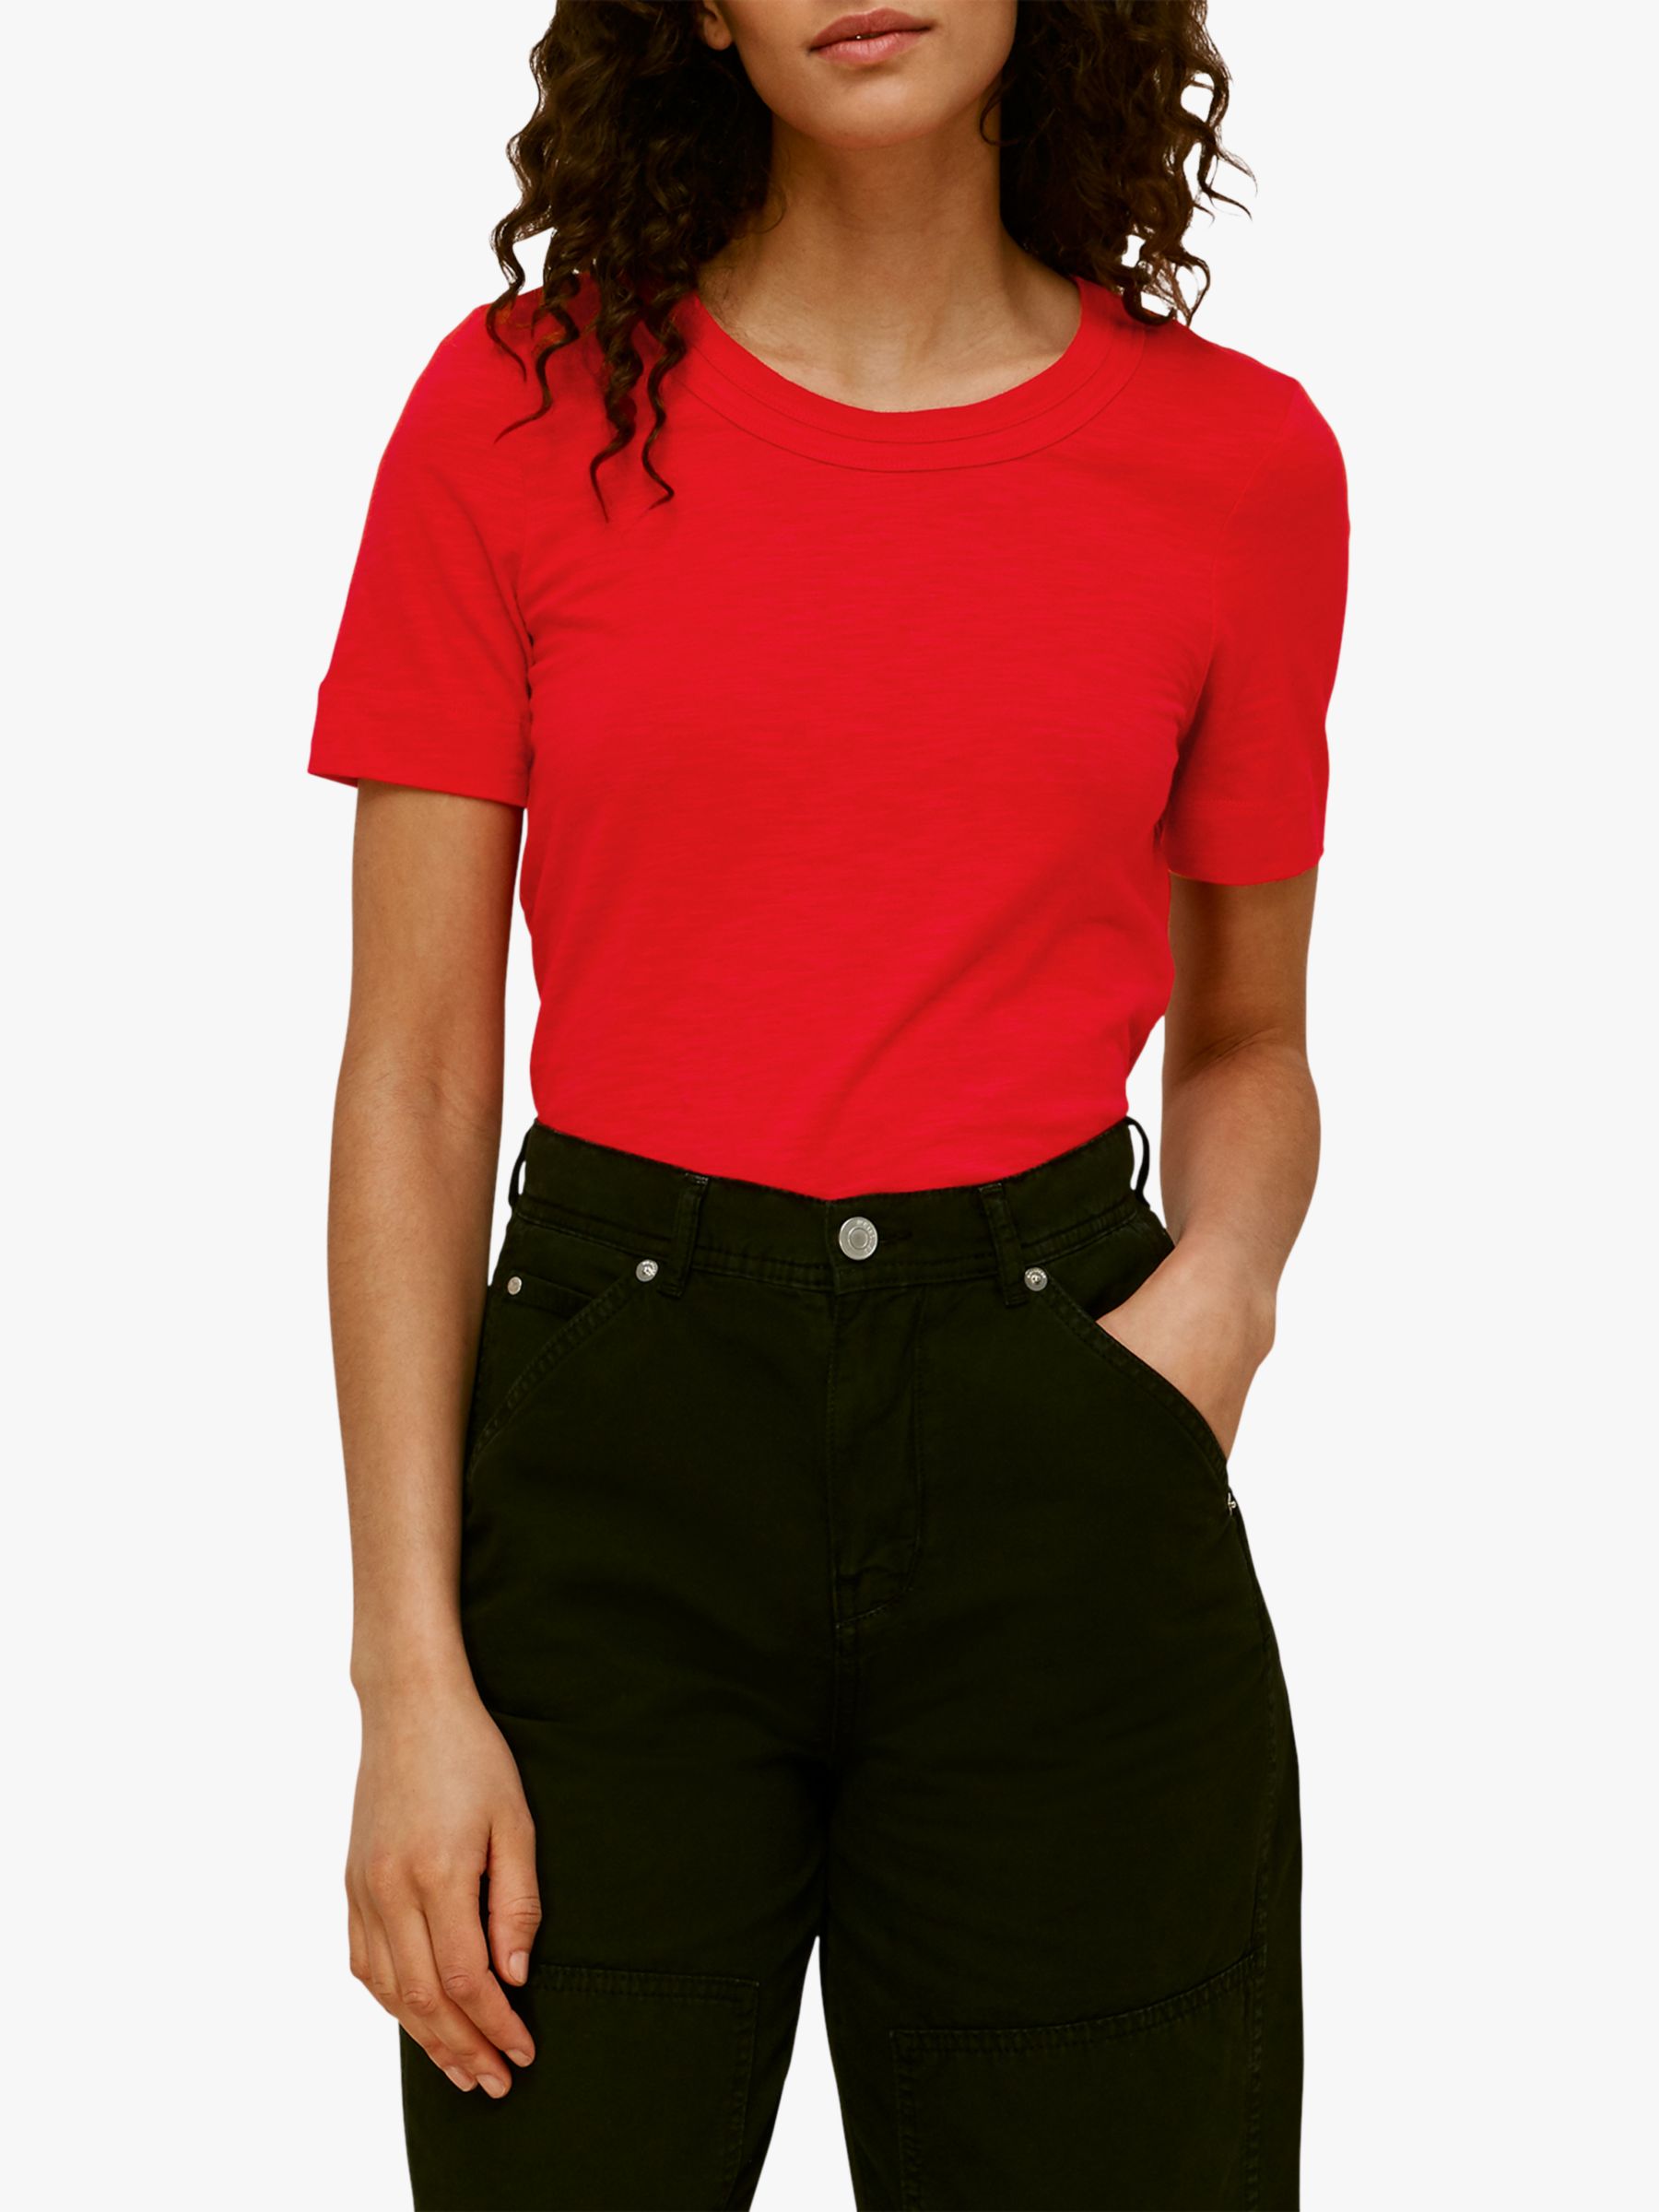 red short sleeve shirt womens